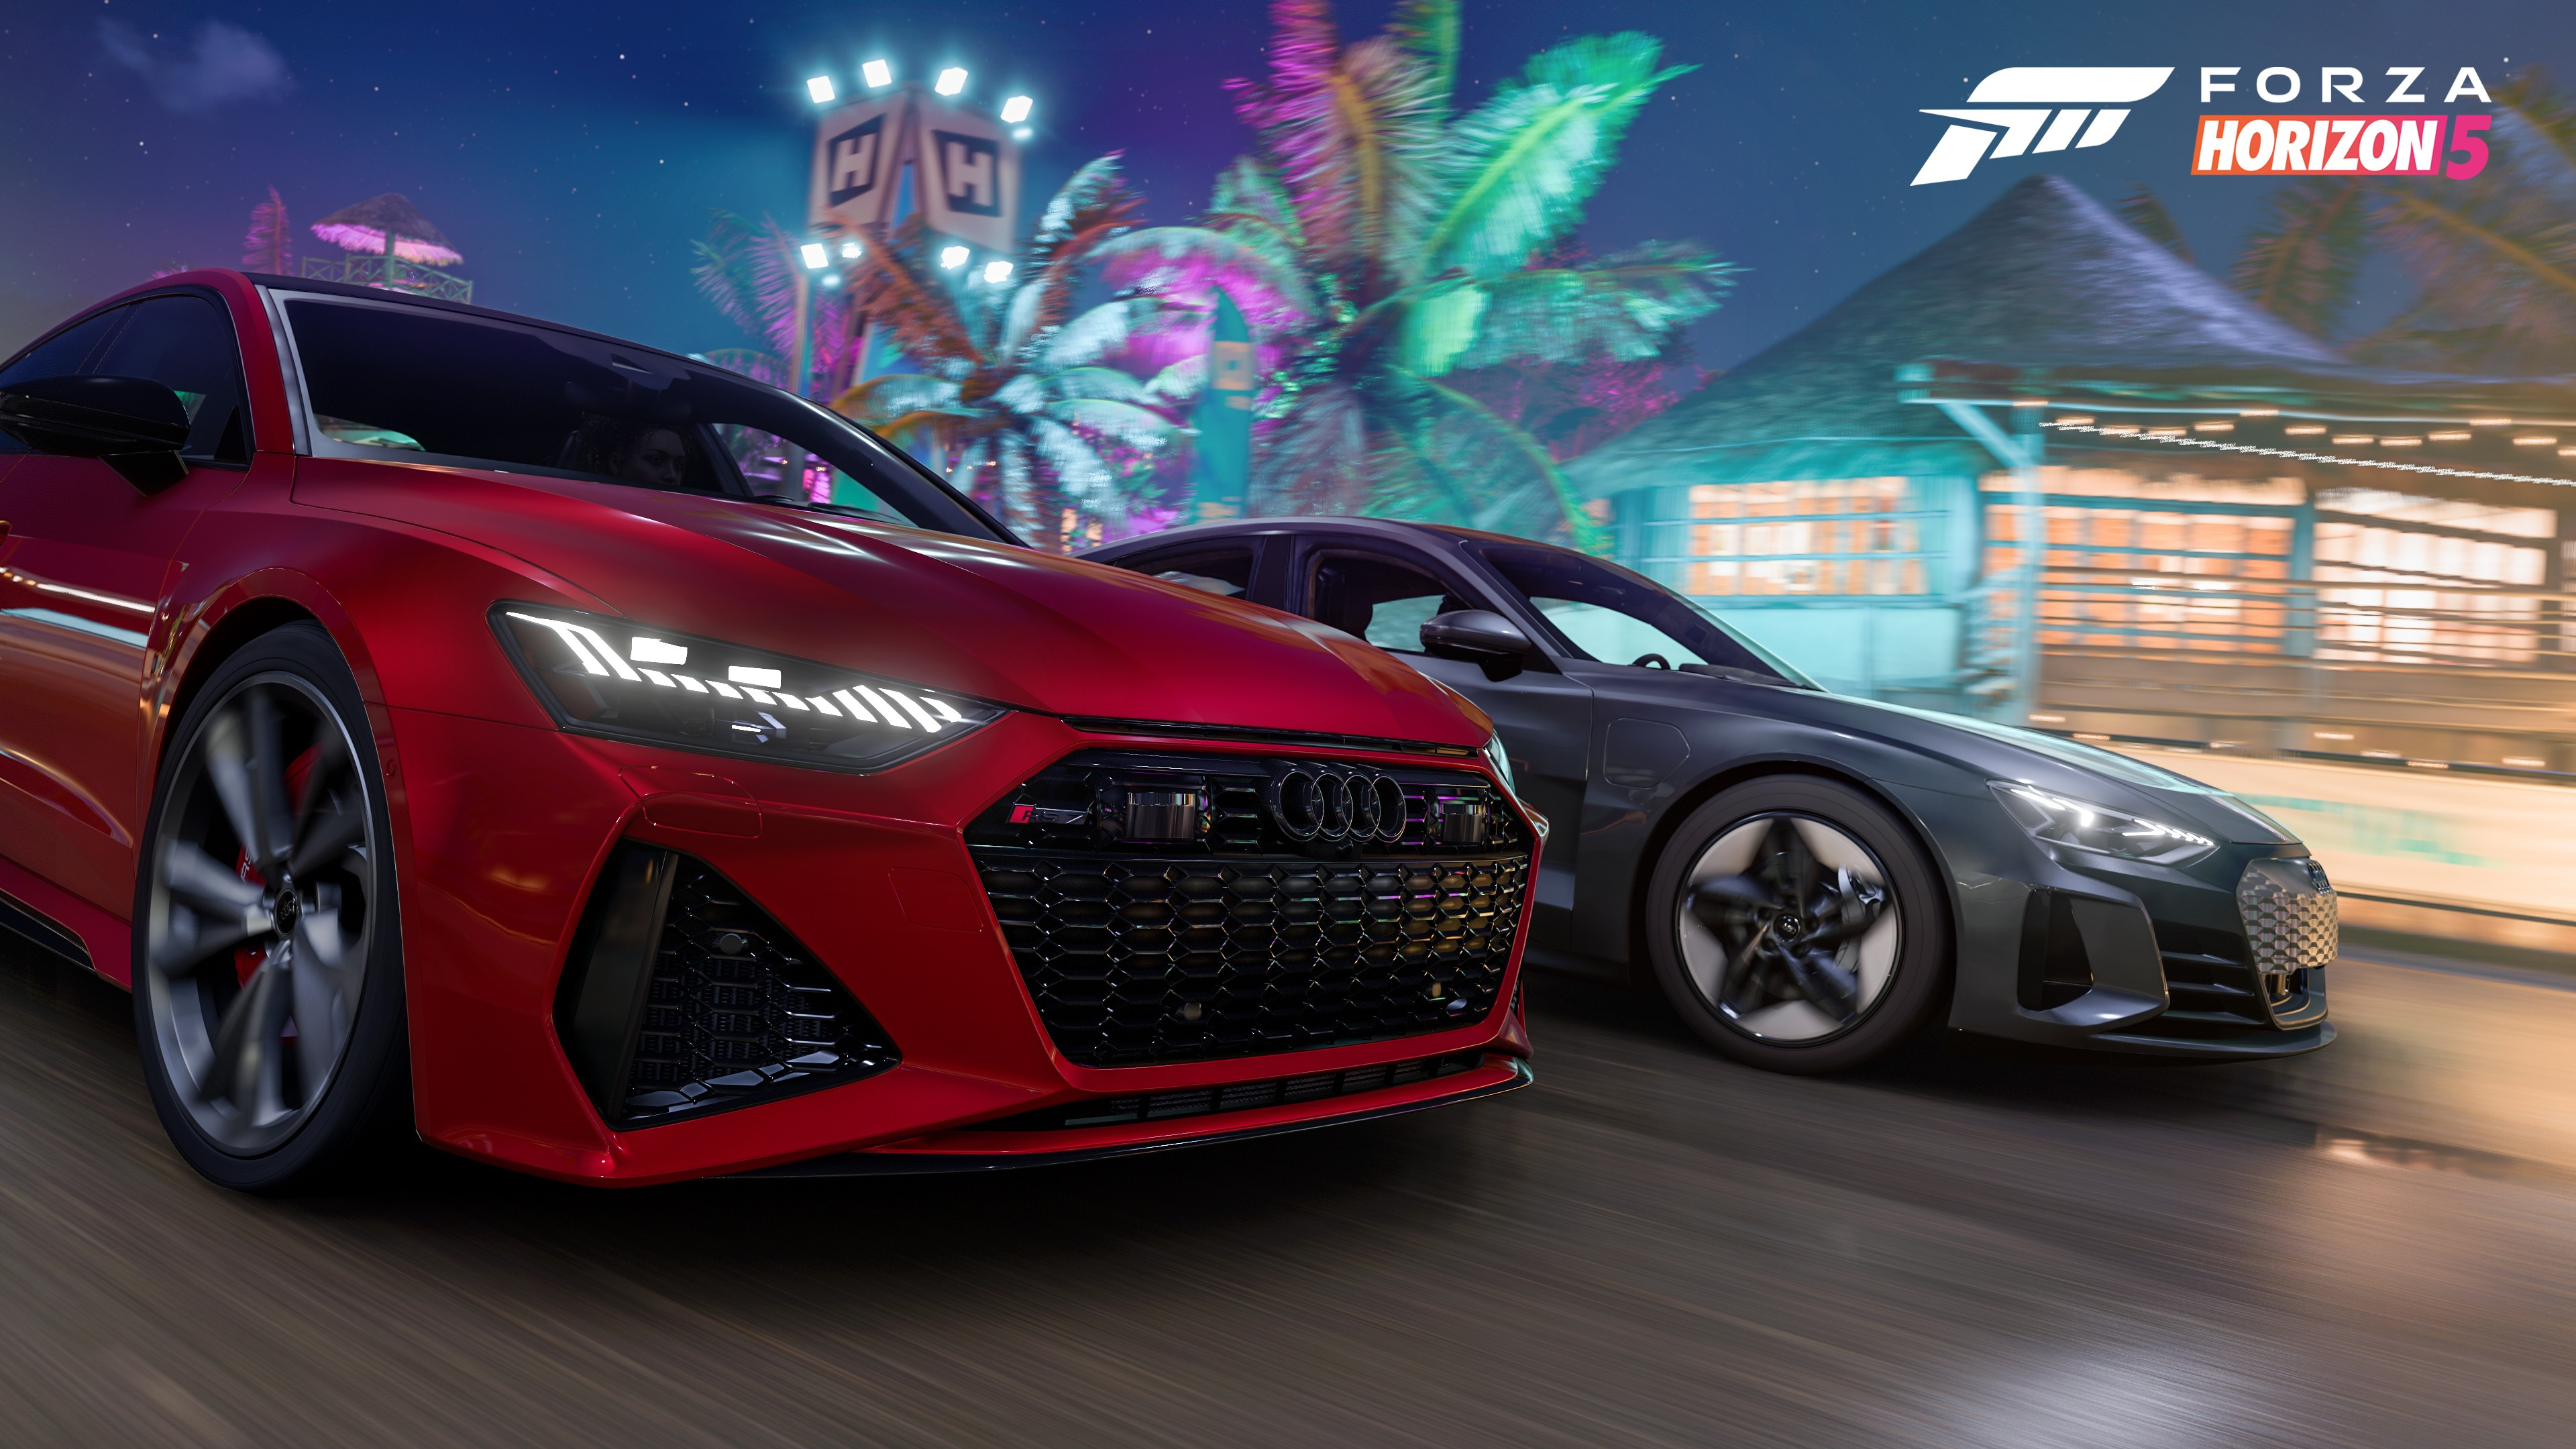 Forza Horizon - Forza Horizon added a new photo.